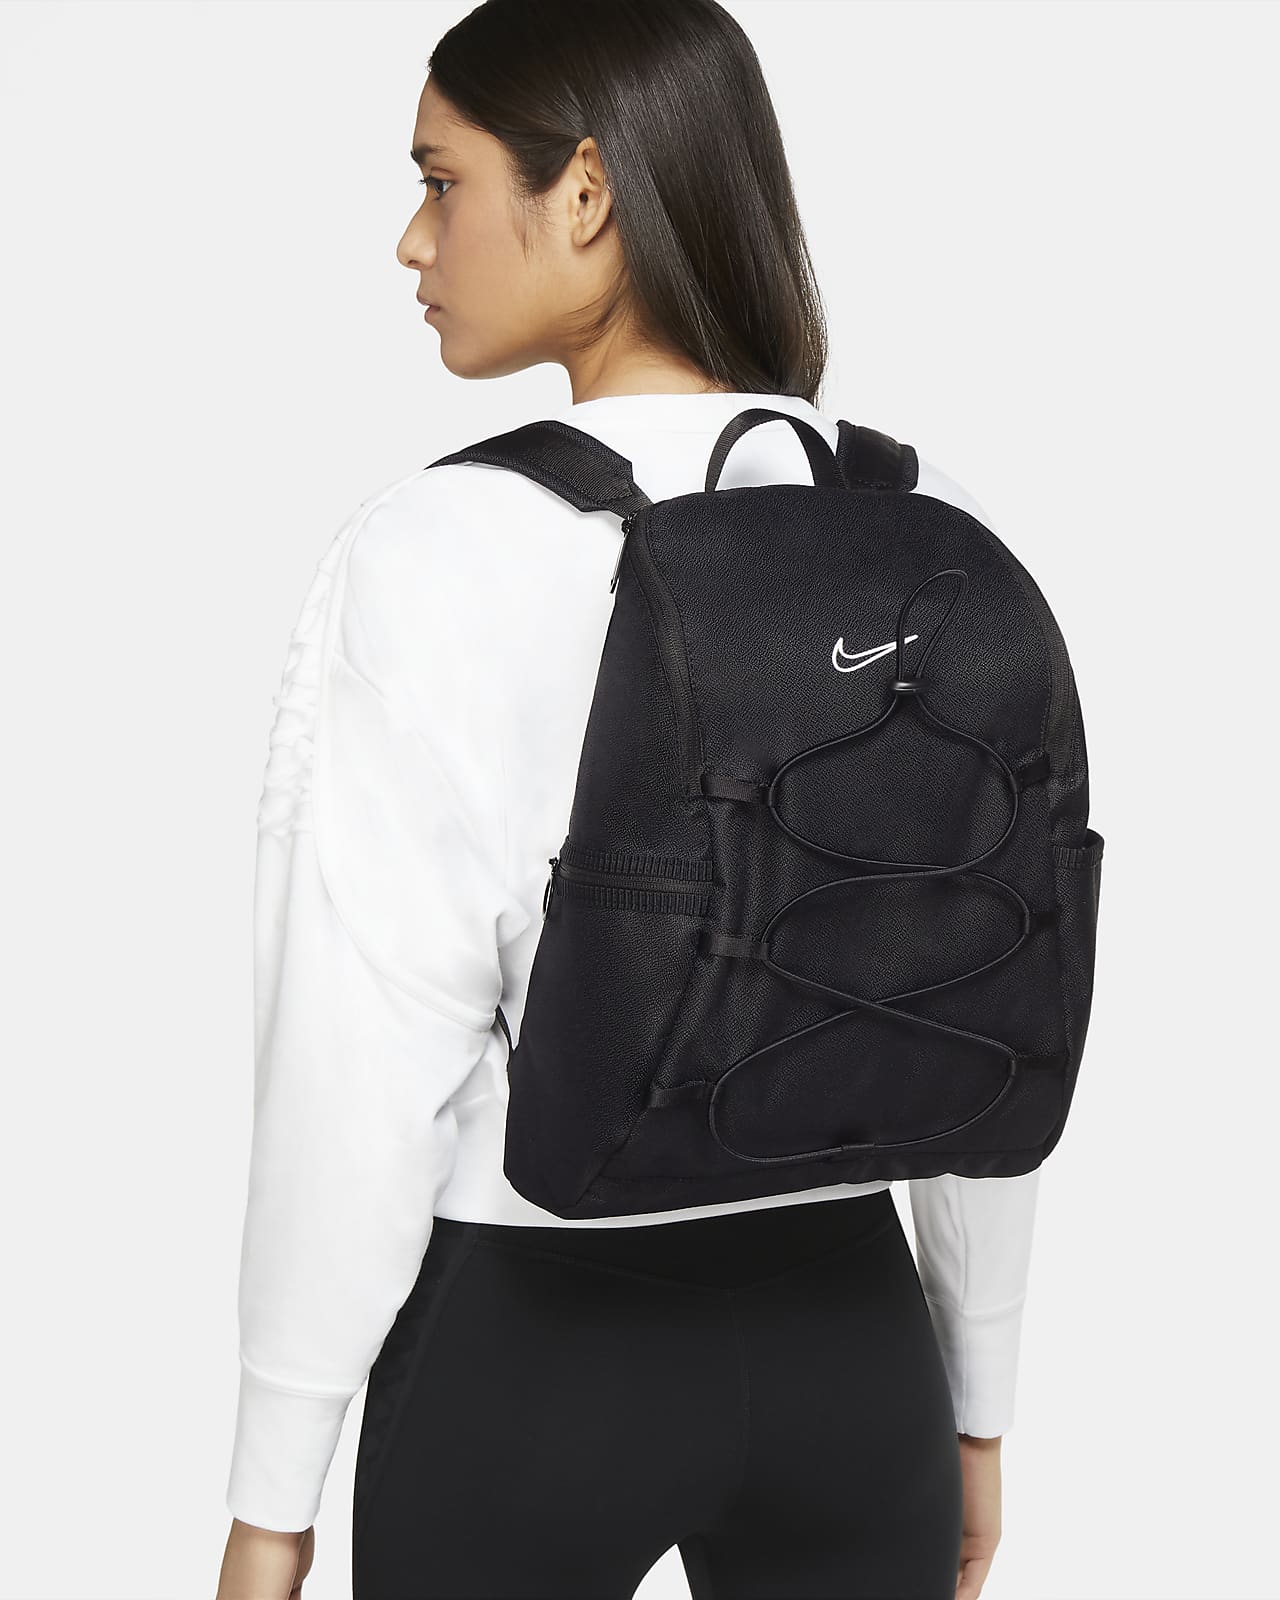 Nike One Women's Training Backpack. Nike AU